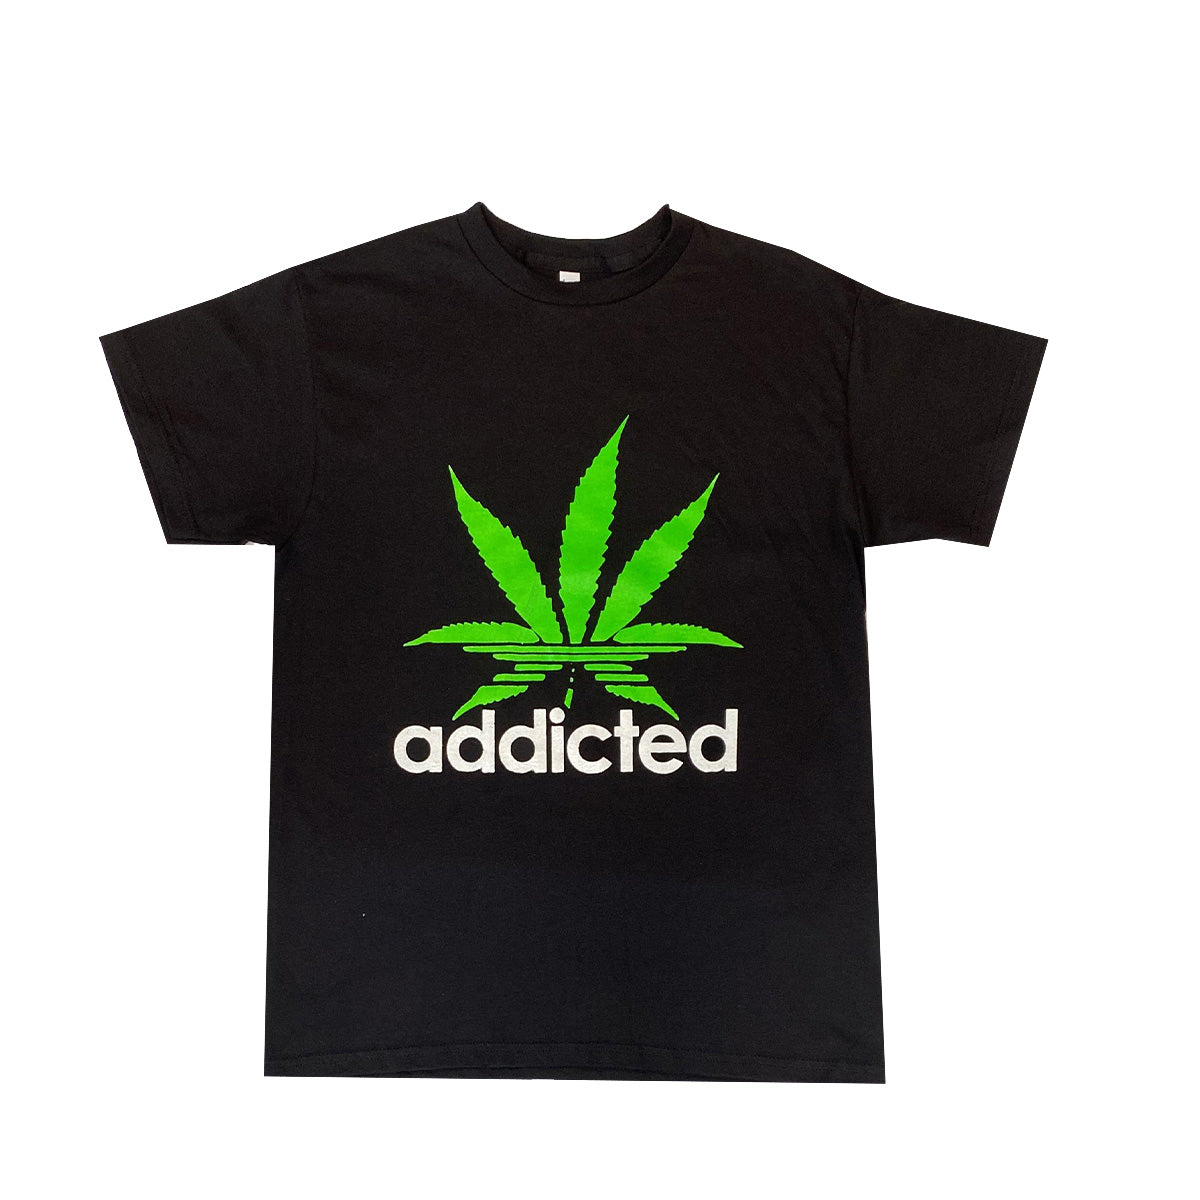 Addicted 100% Cotton T-Shirt Pack of 5 Units, M, L, XL, XXL, XXXL